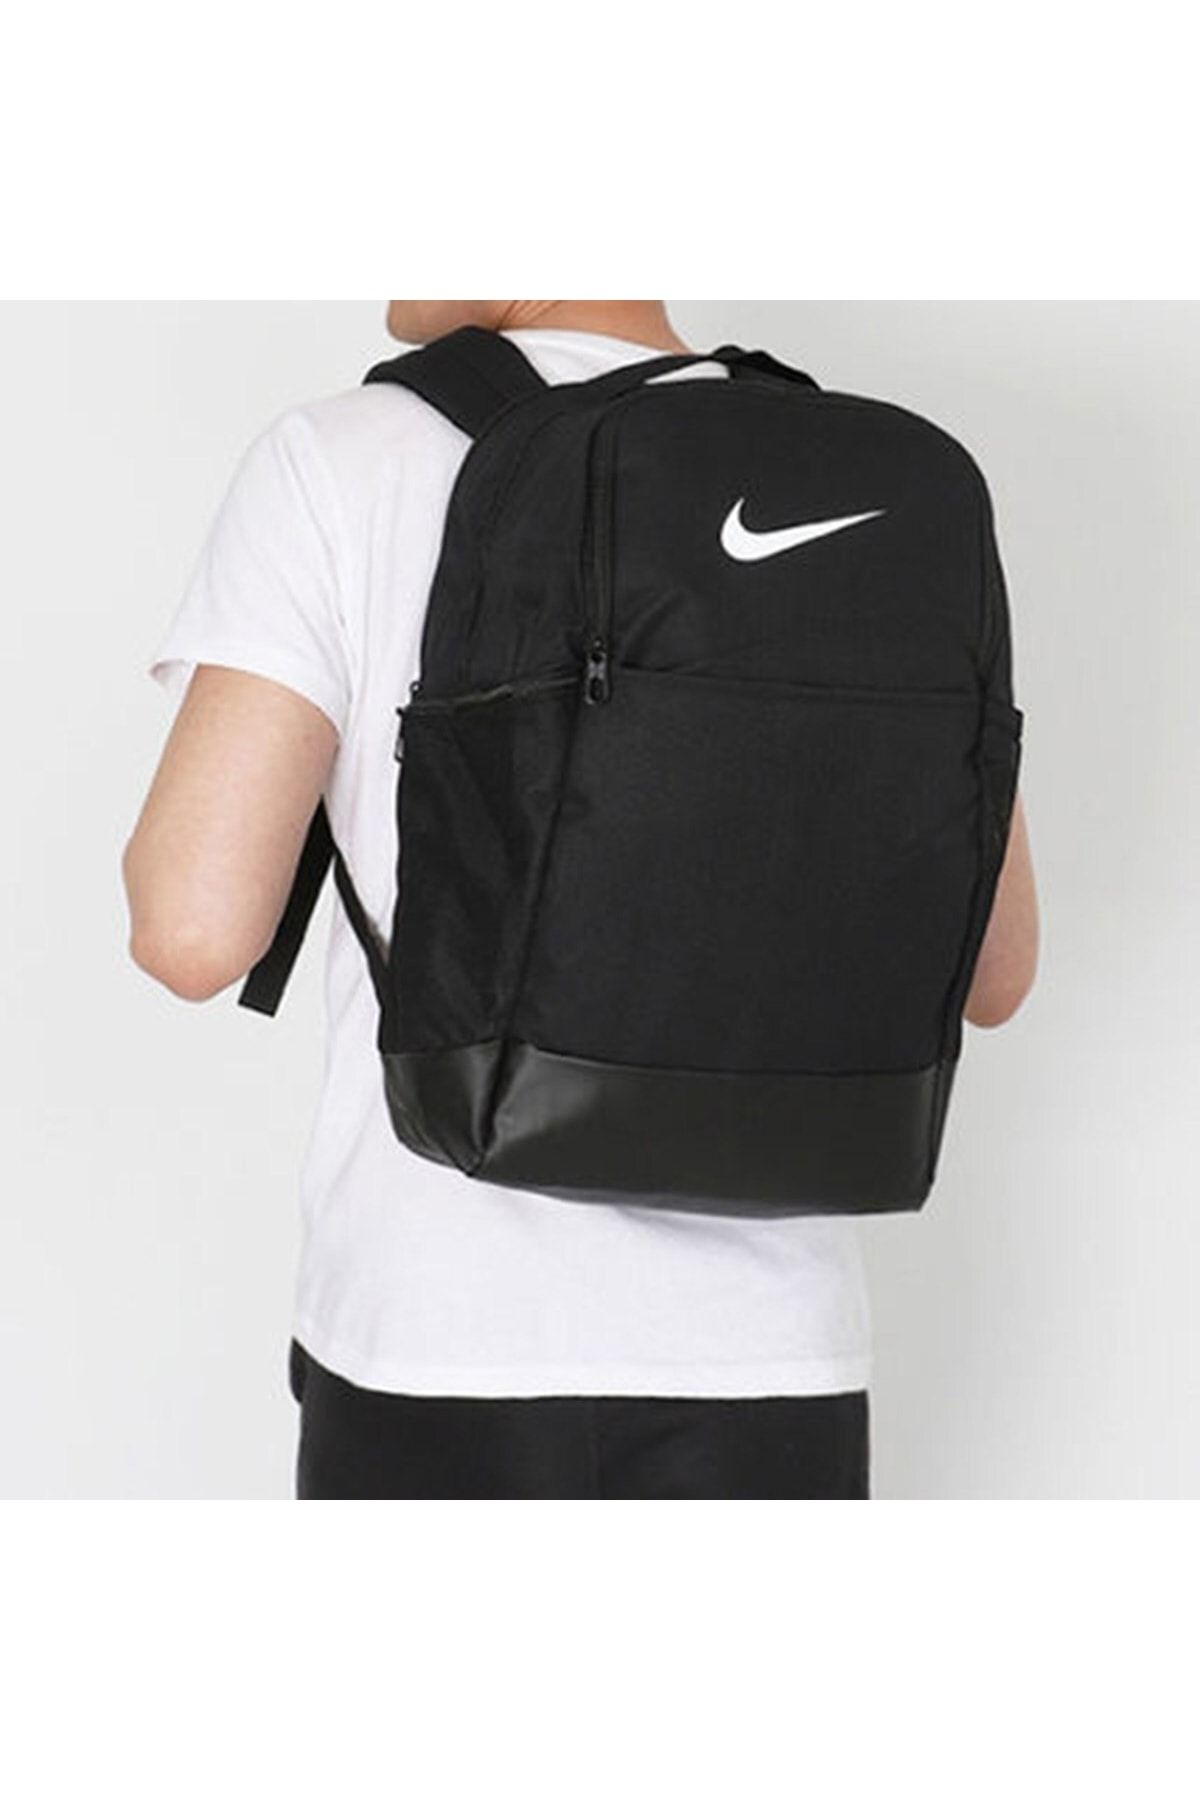 Nike Brasilia Üniseks Sırt Çantası, Beden M, 9.0 Çanta : : Moda